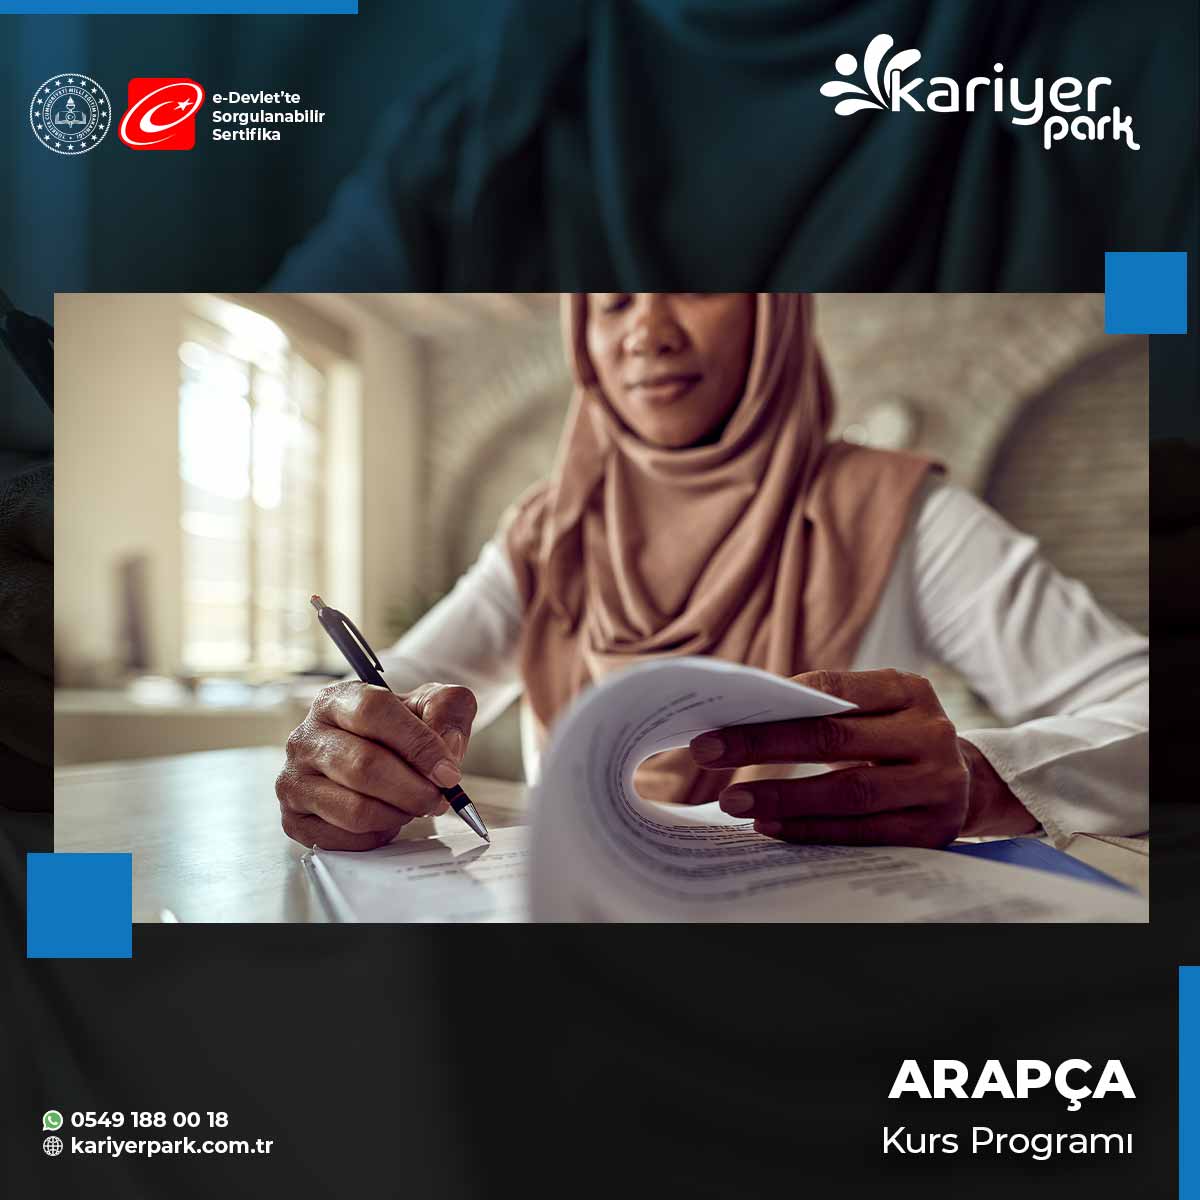 Arapça Kurs Programı, Arap dili ve kültürünü öğrenmek isteyen kişilere yönelik eğitim programlarıdır.